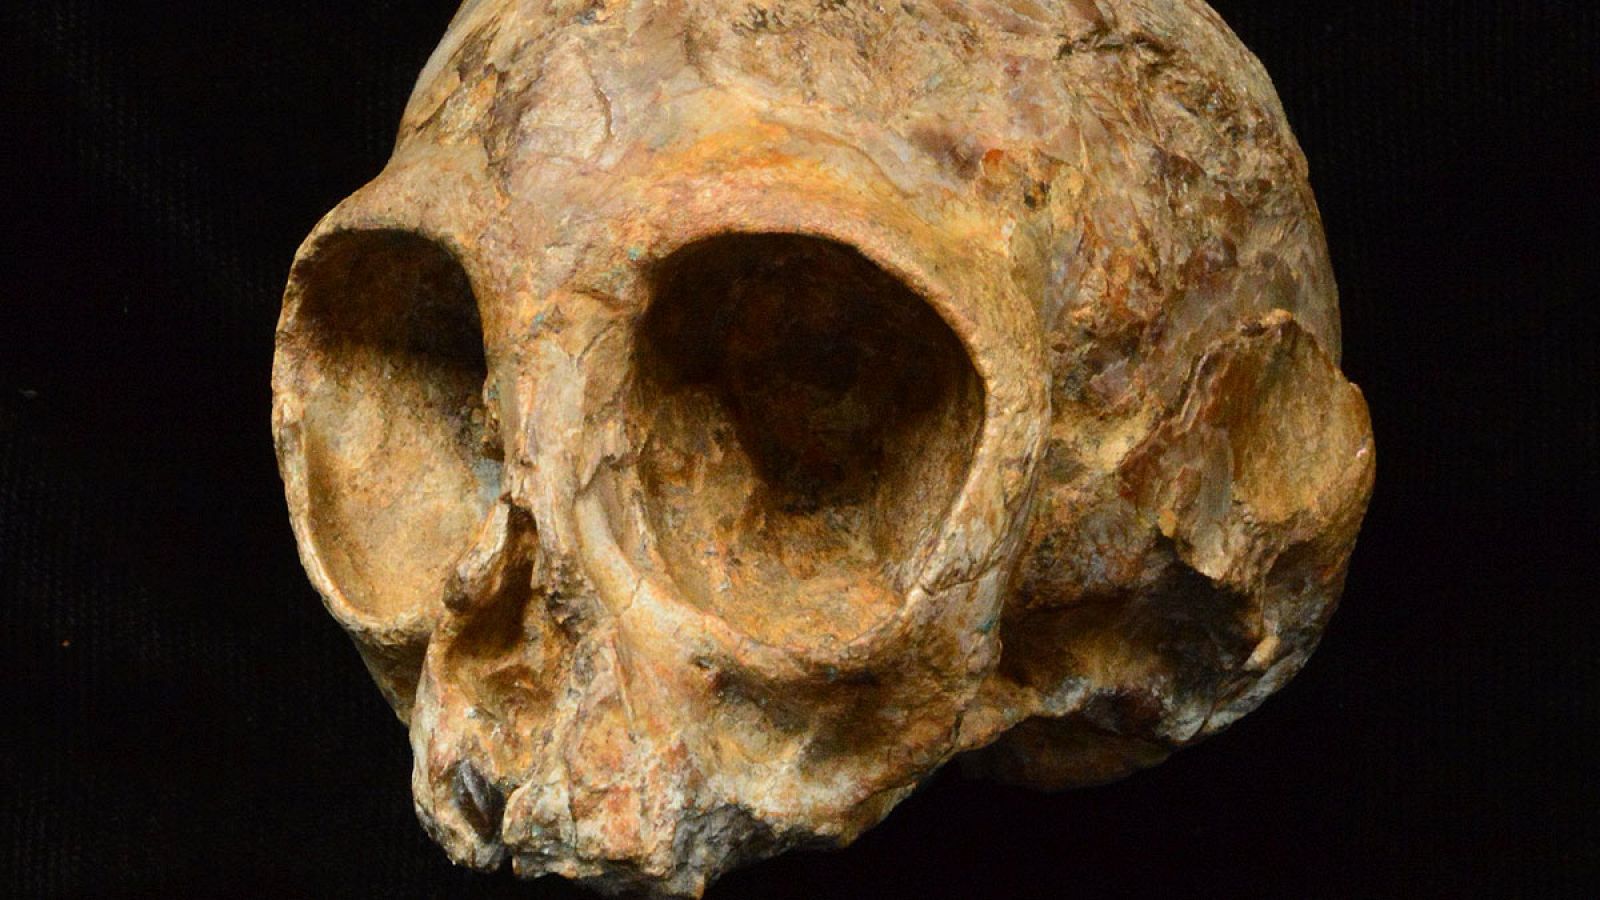 El cráneo de una cría de mono arroja luz sobre el antepasado común de simios y humanos